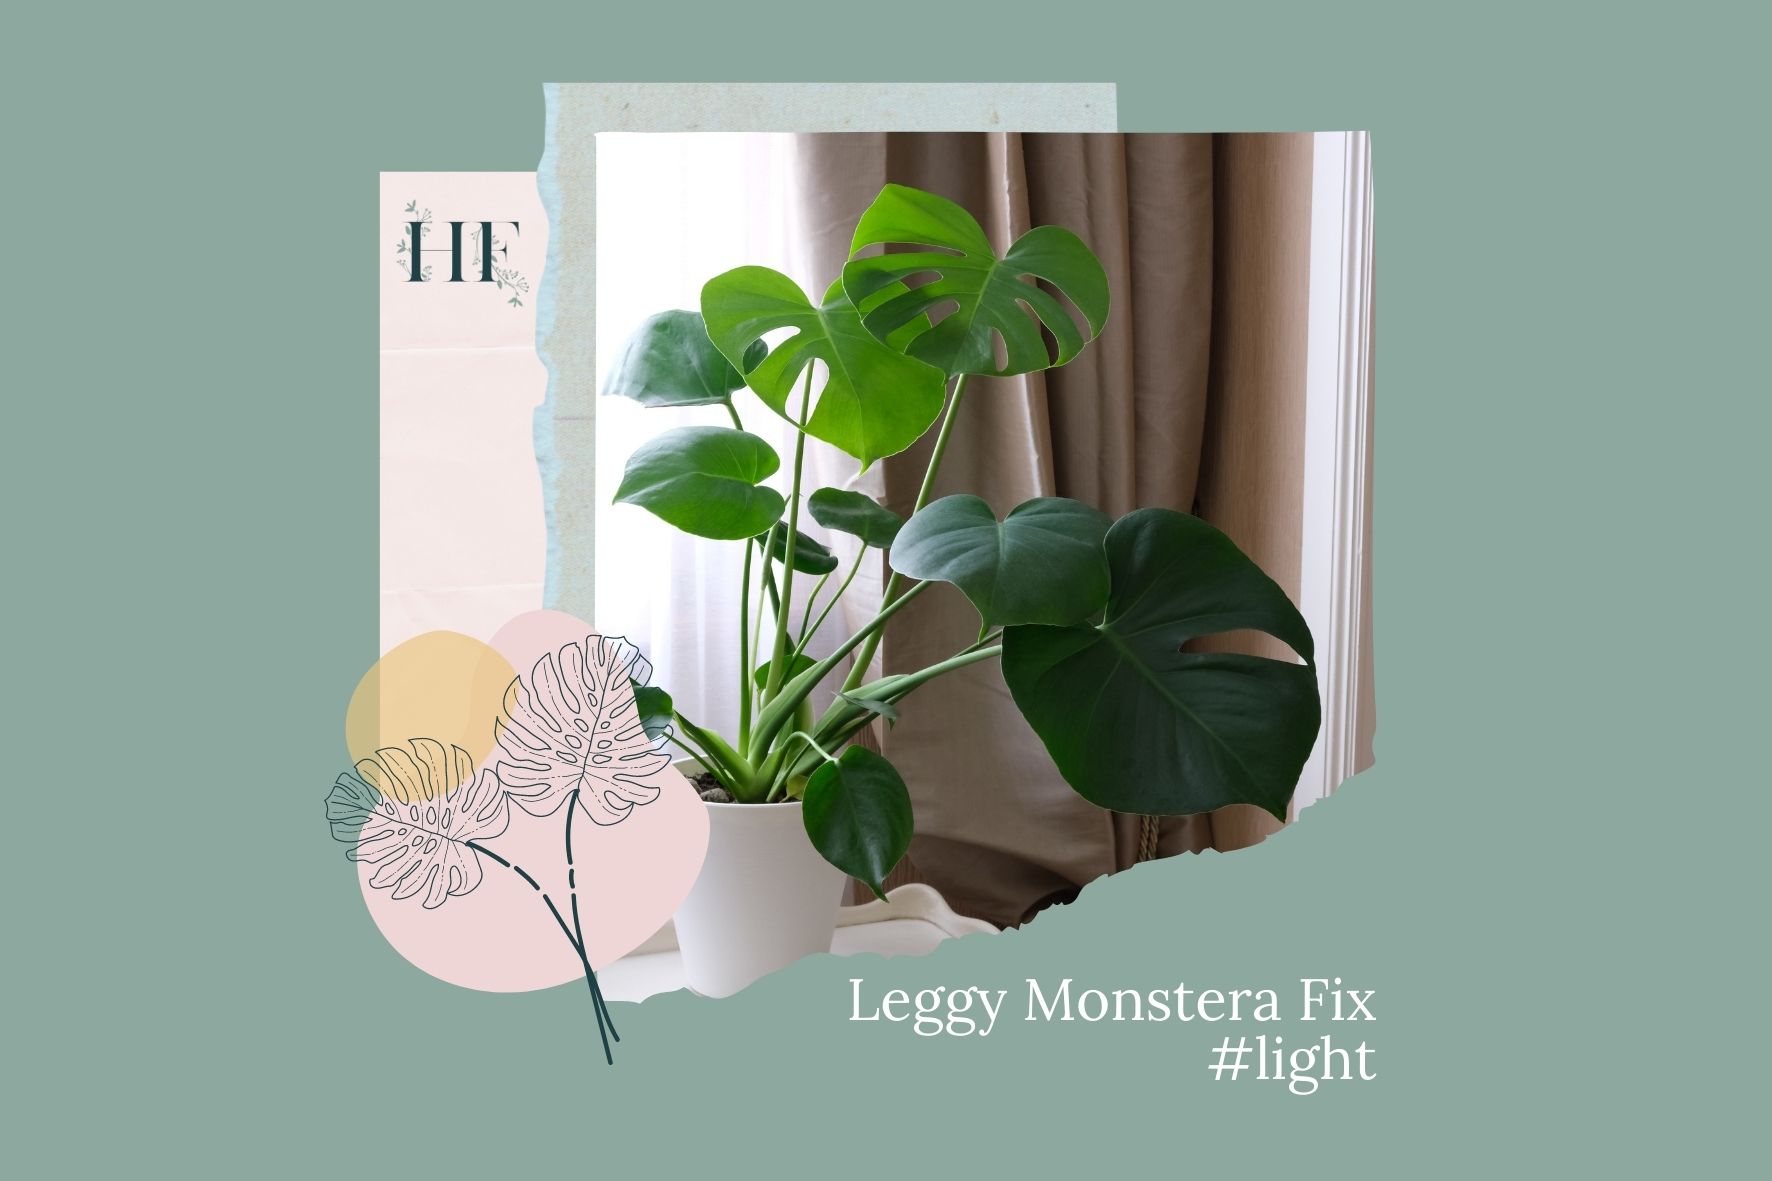 leggy-monstera-fix-2-light